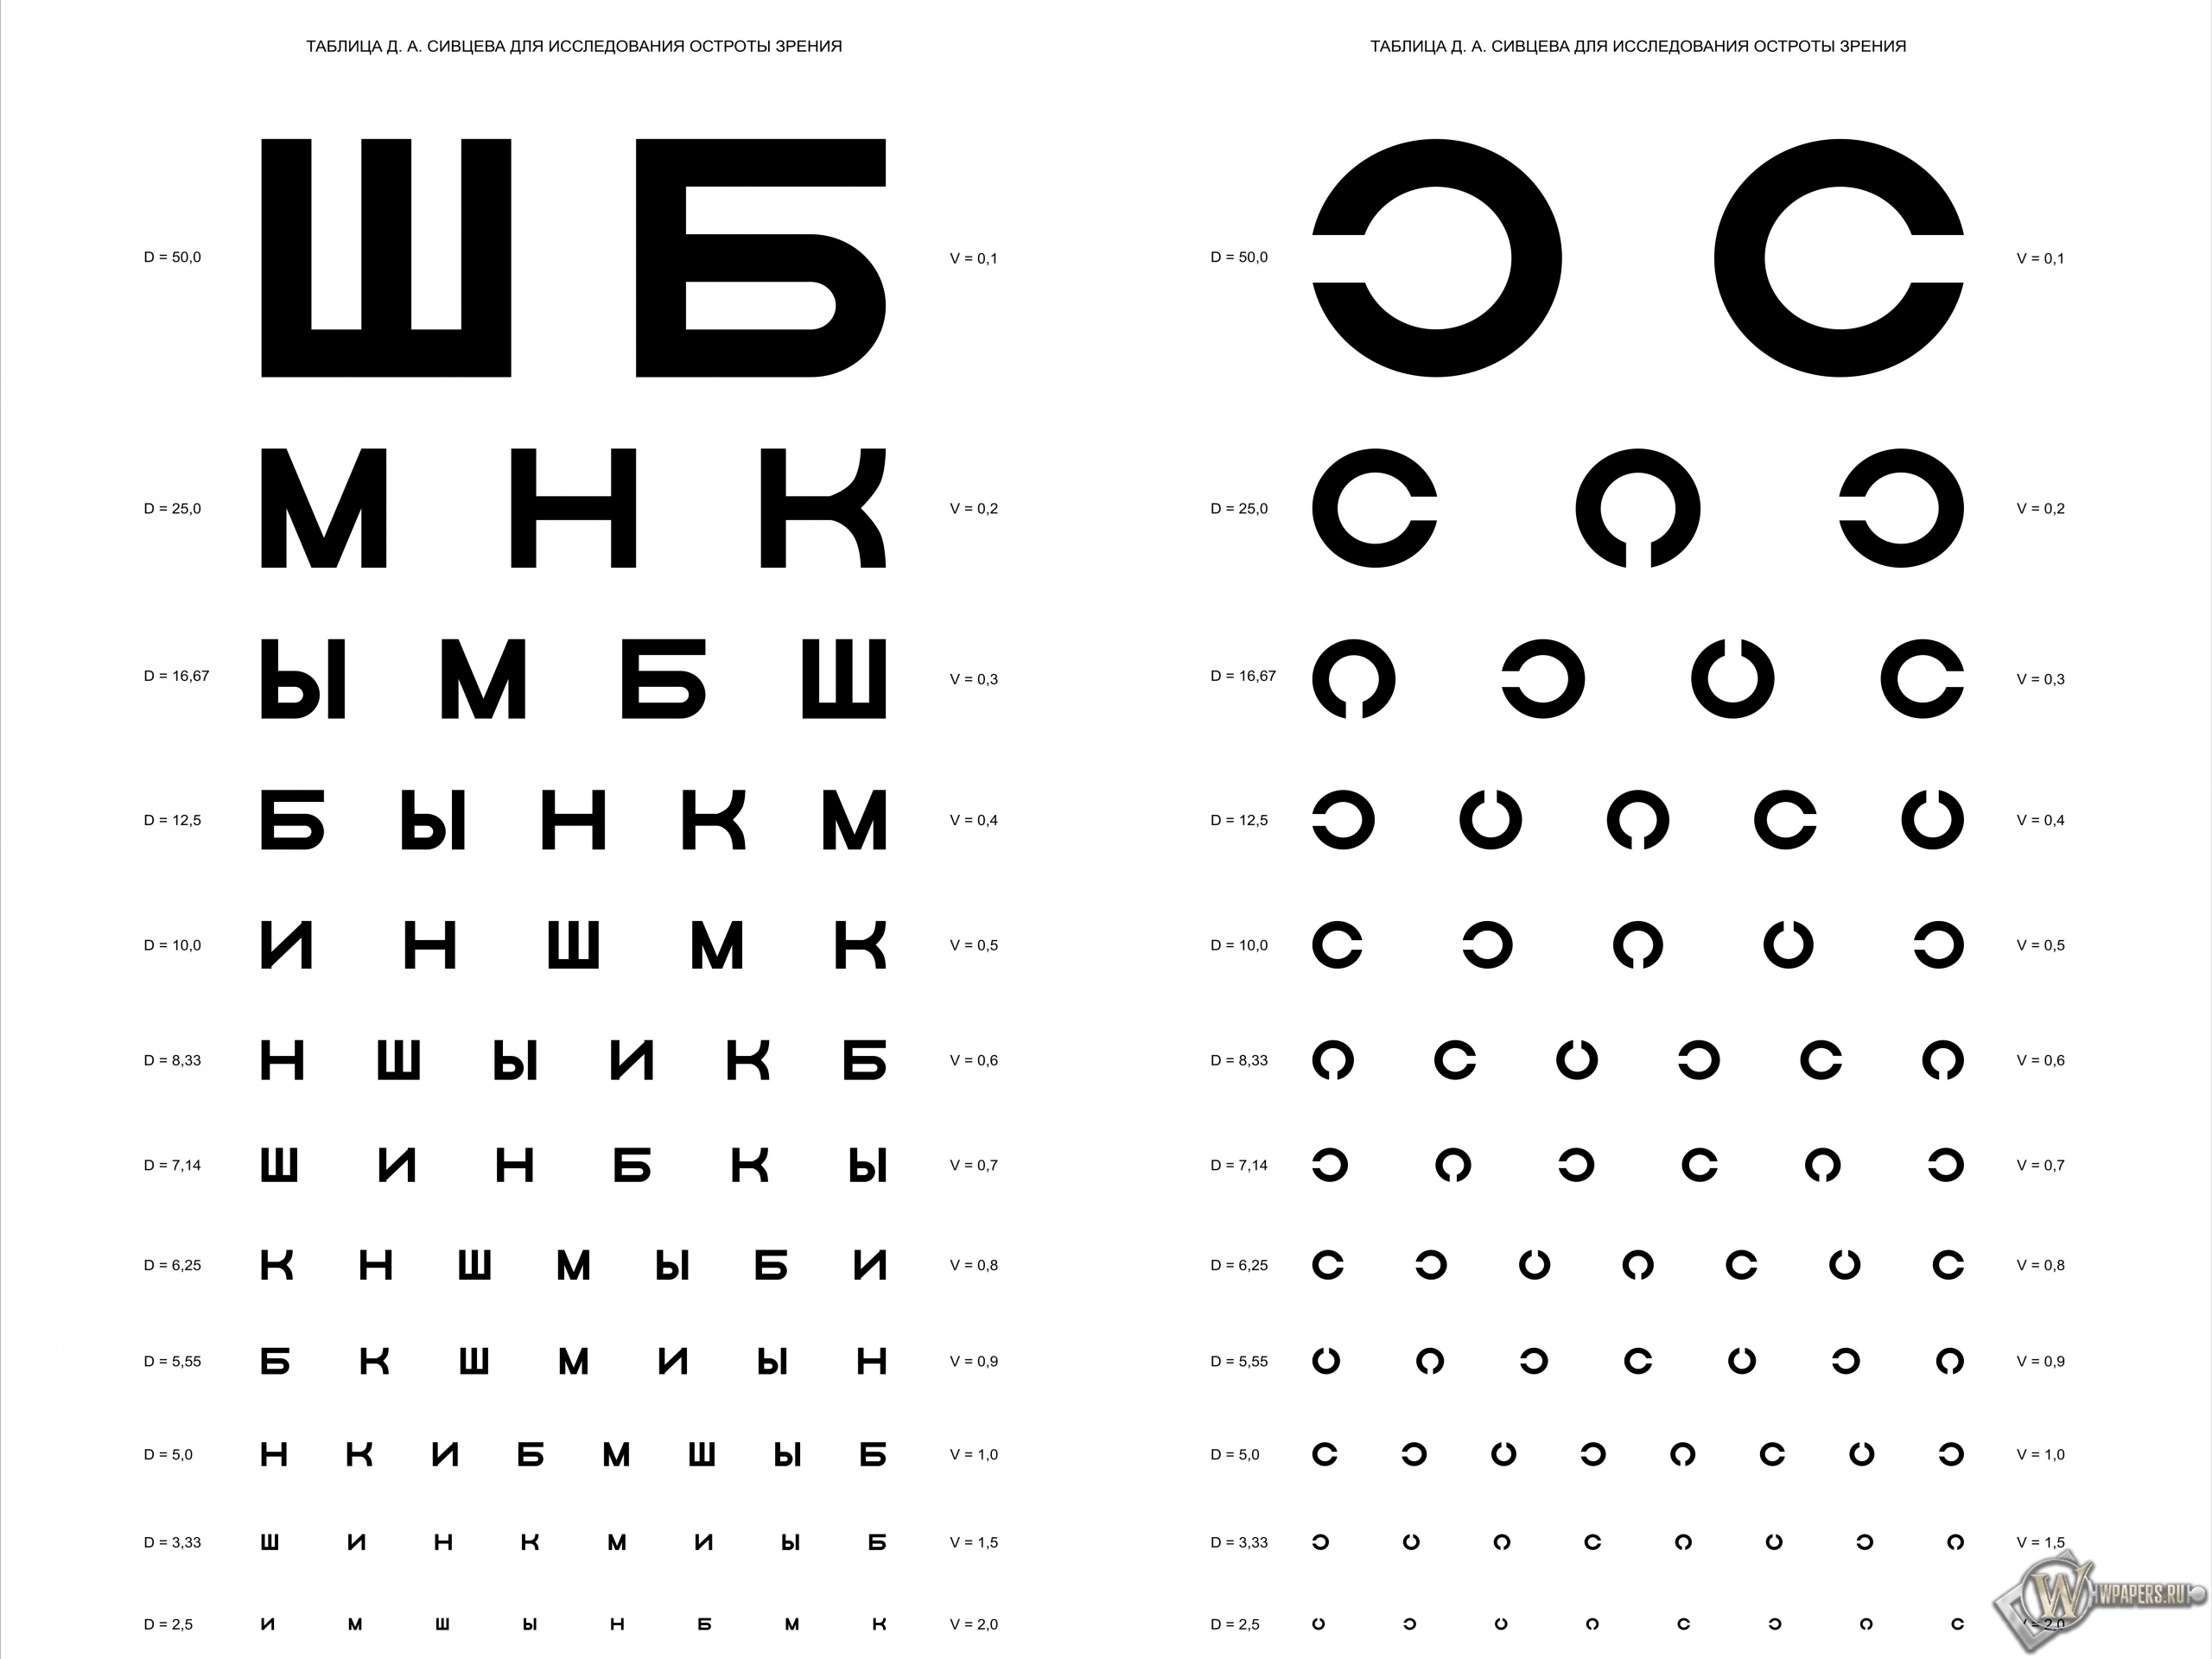 Таблица Д.А. Сивцева для проверки зрения 2560x1920